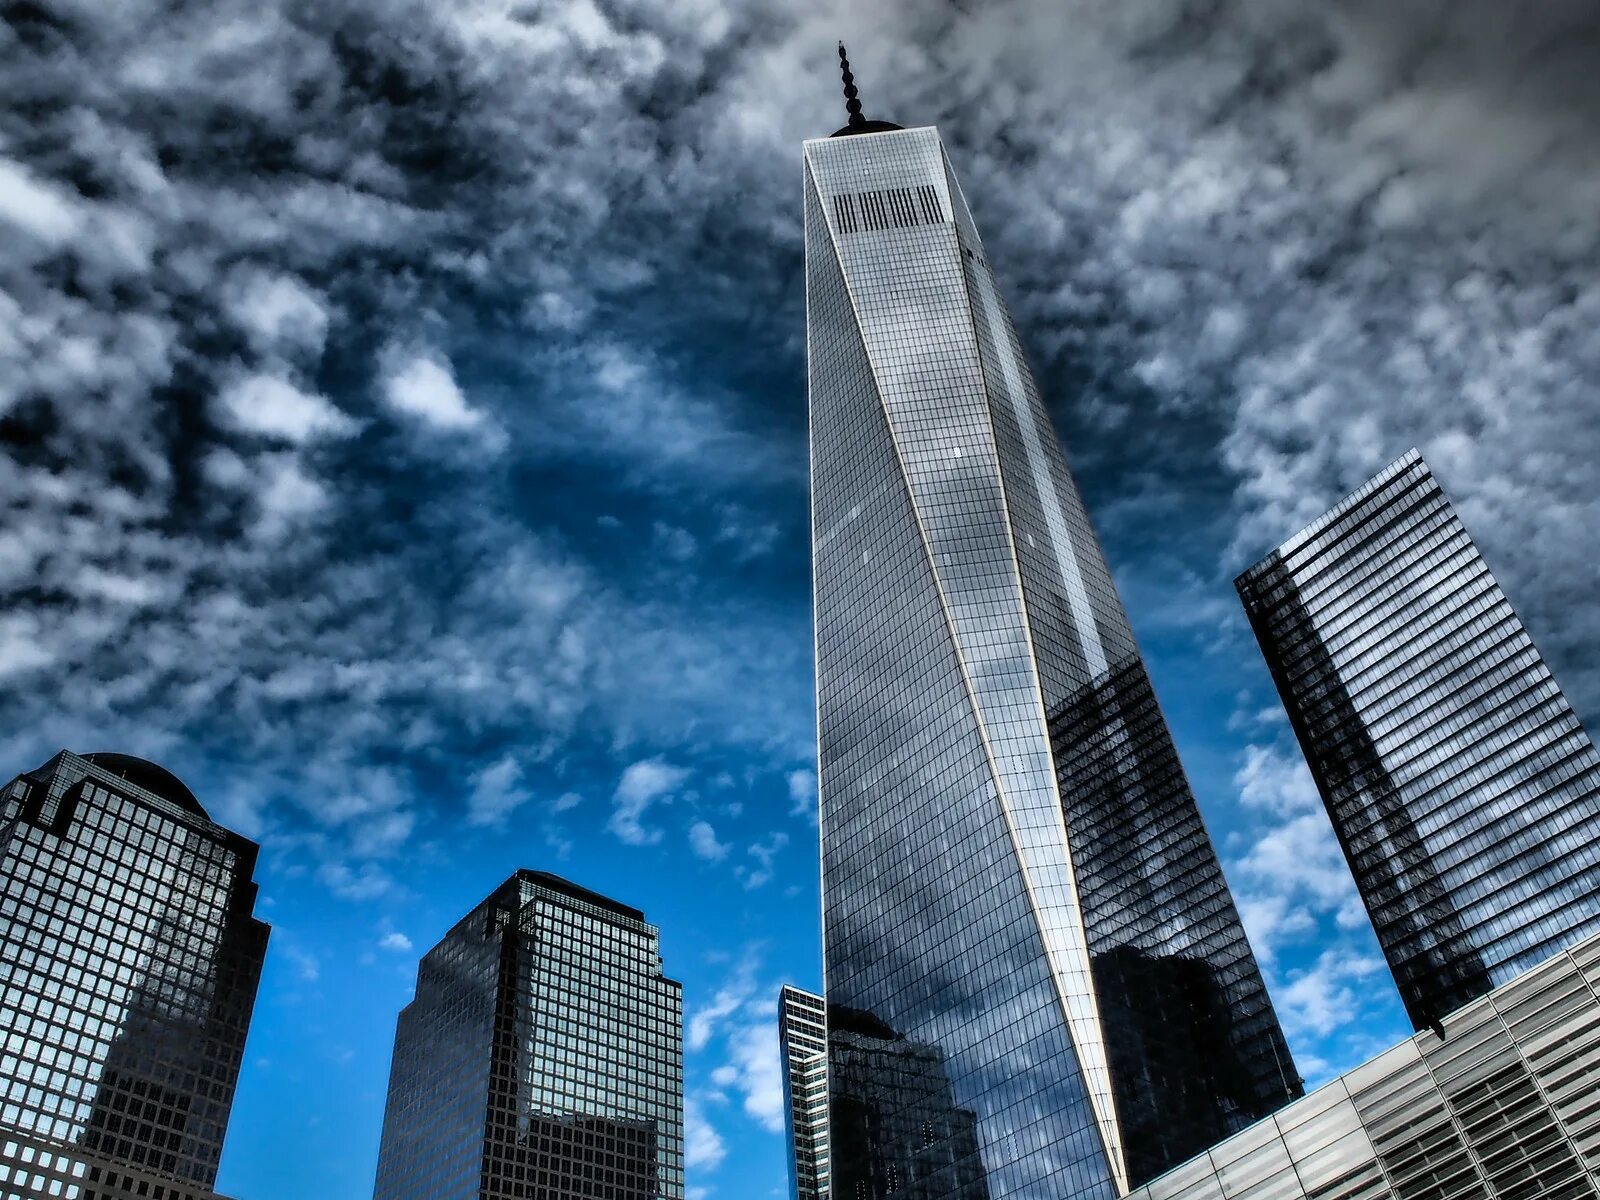 Остров небоскребов. Всемирный торговый центр 1 Нью-Йорк. Башня свободы в Нью-Йорке. Всемирный торговый центр 1 (541 м). Нью-Йорк, США. Небоскреб башня свободы.